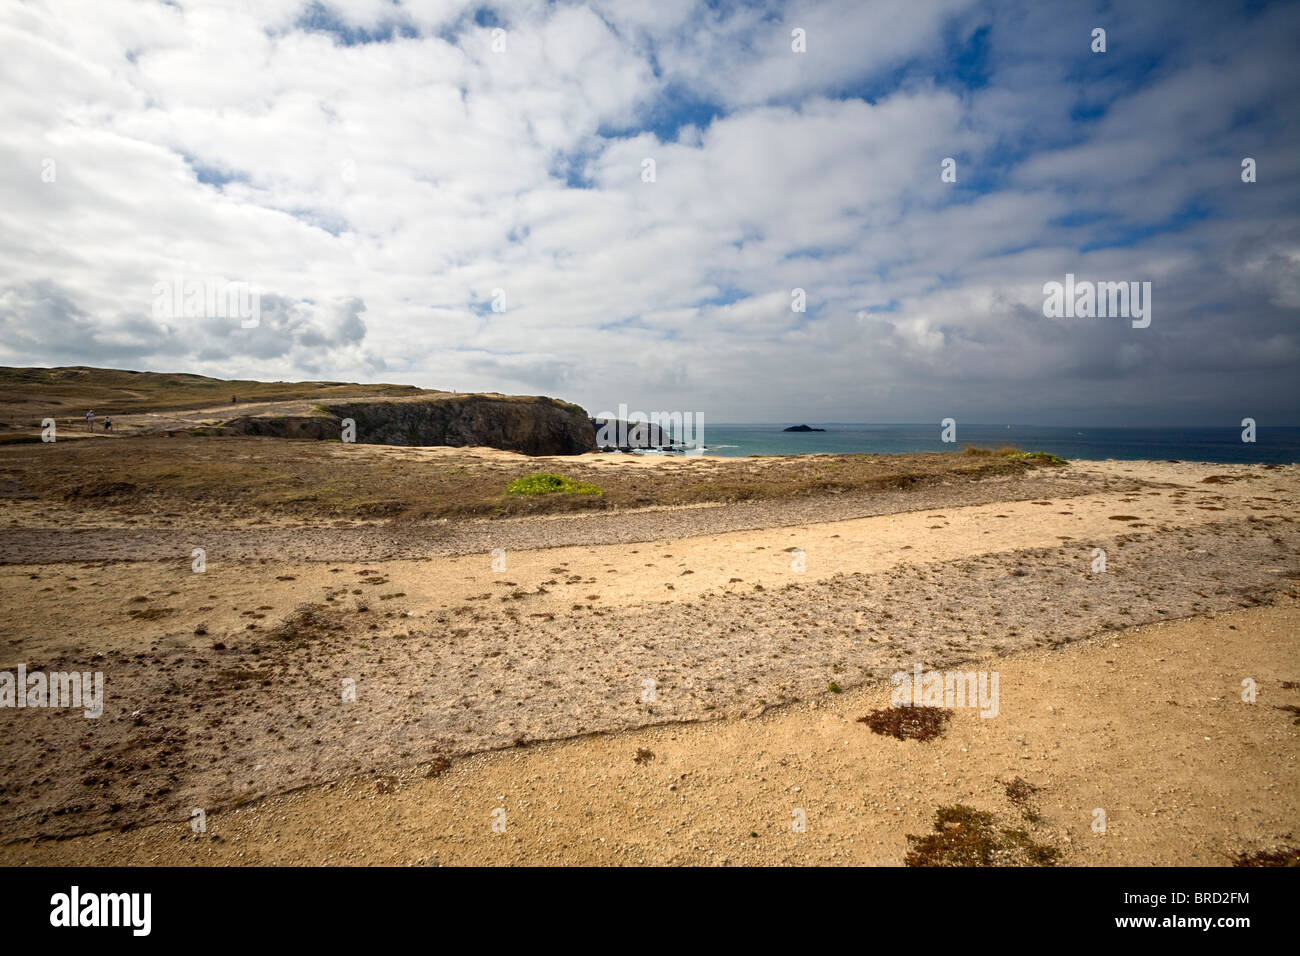 The struggle against soil erosion of the Quiberon peninsula. Lutte contre l'érosion des sols de la presqu'île de Quiberon. Stock Photo